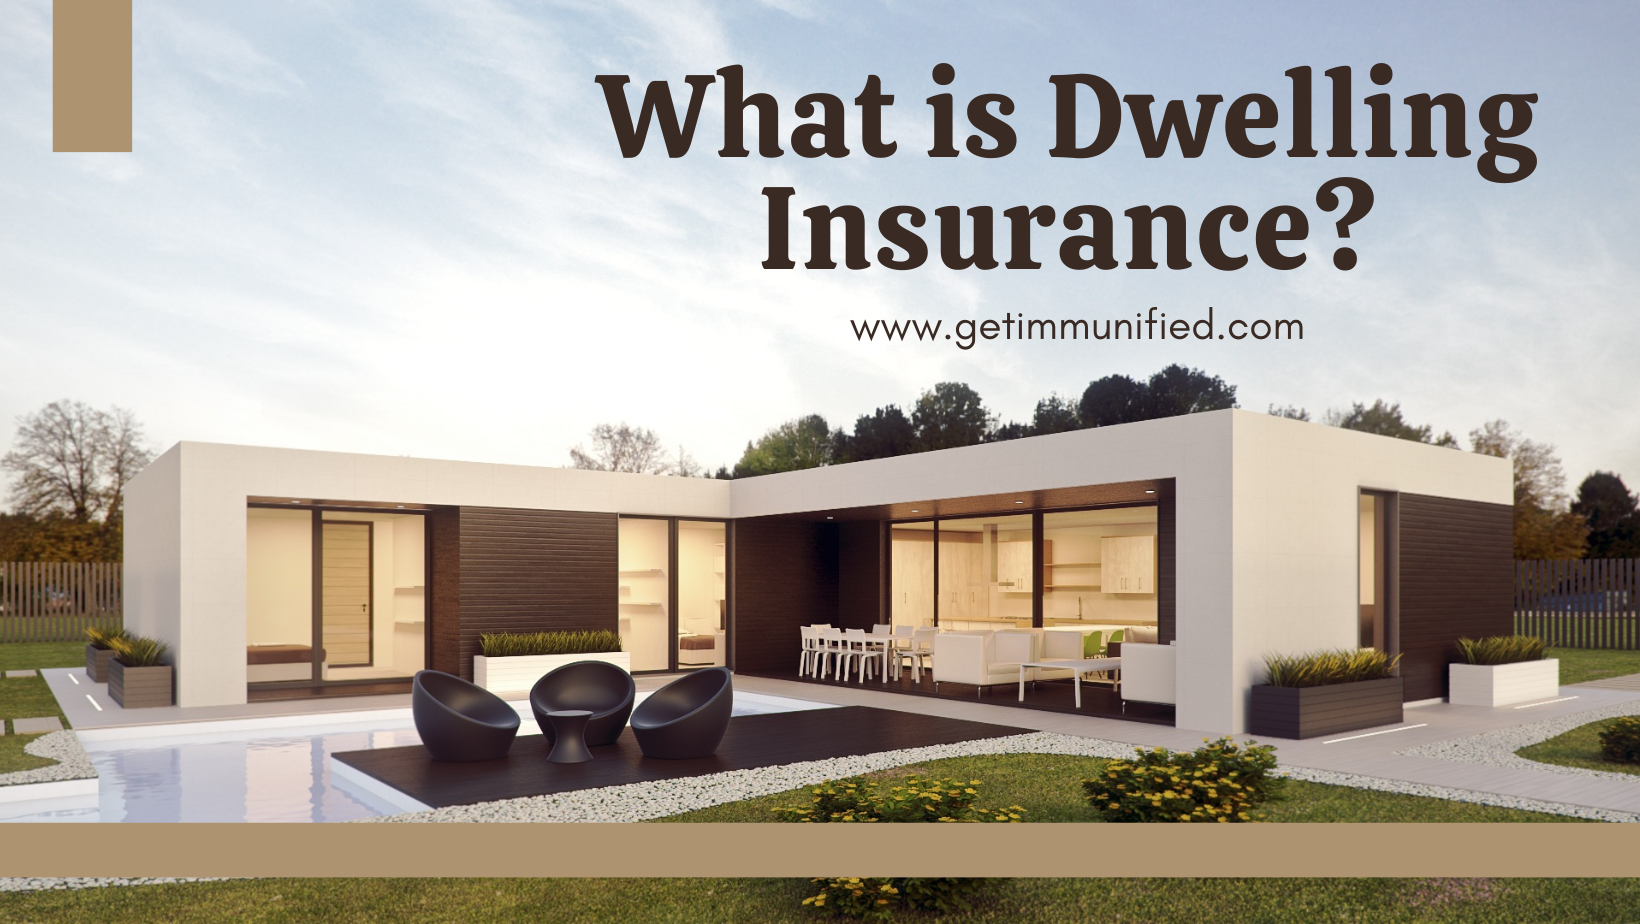 Dwelling Insurance